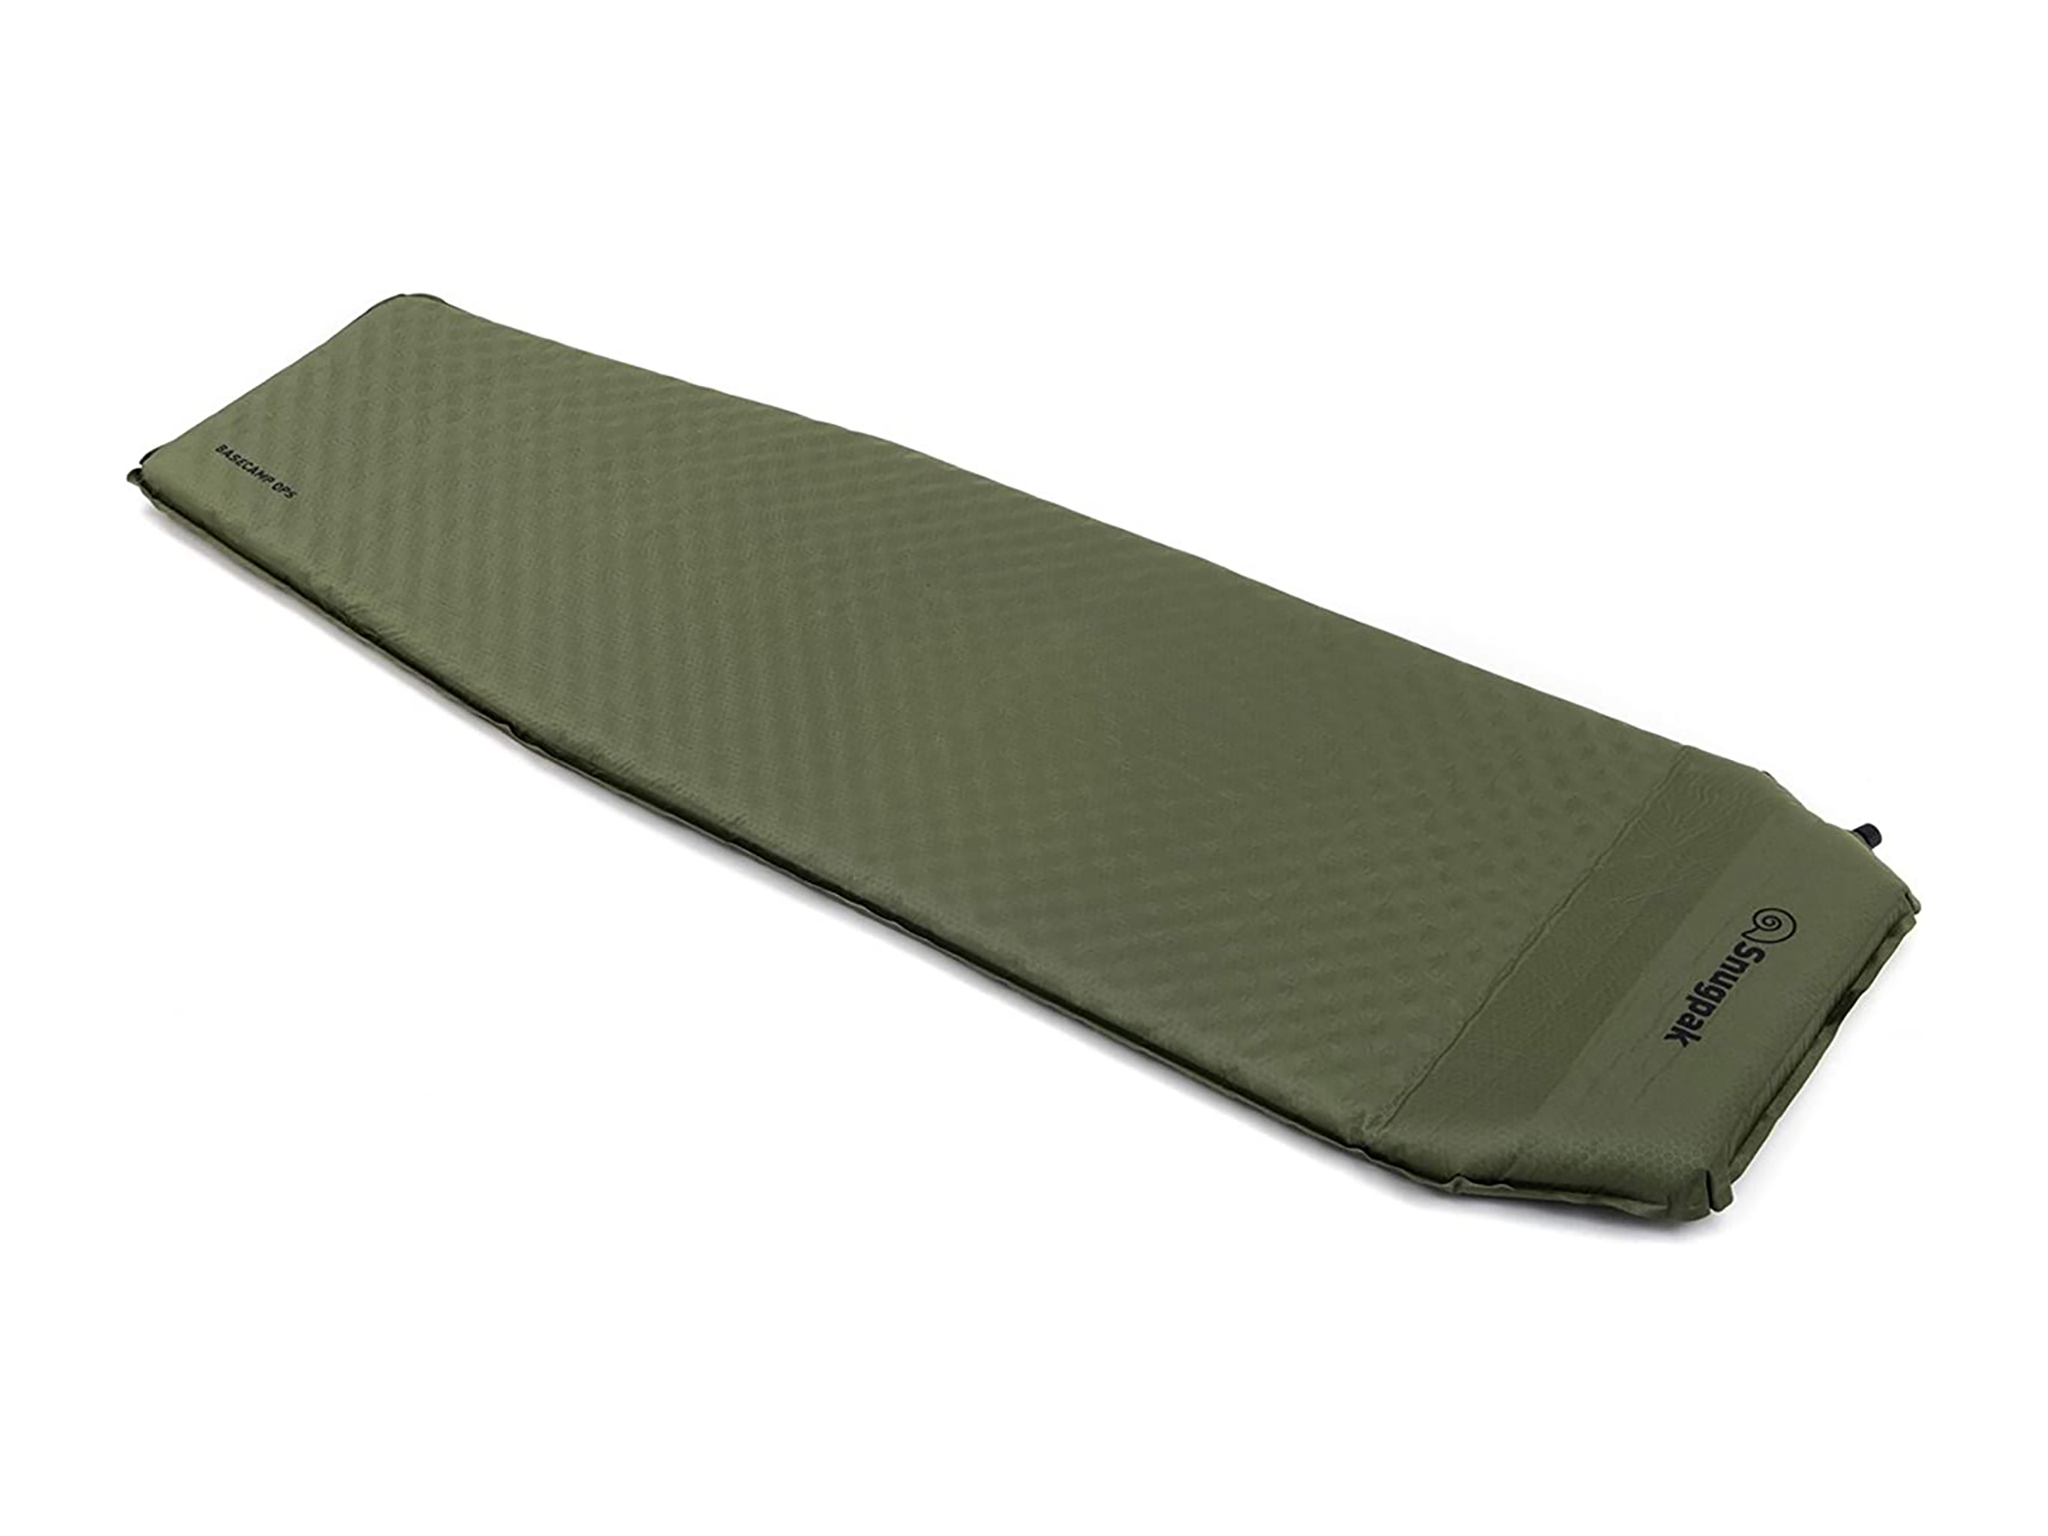 Snugpak XL self-inflating camping mat